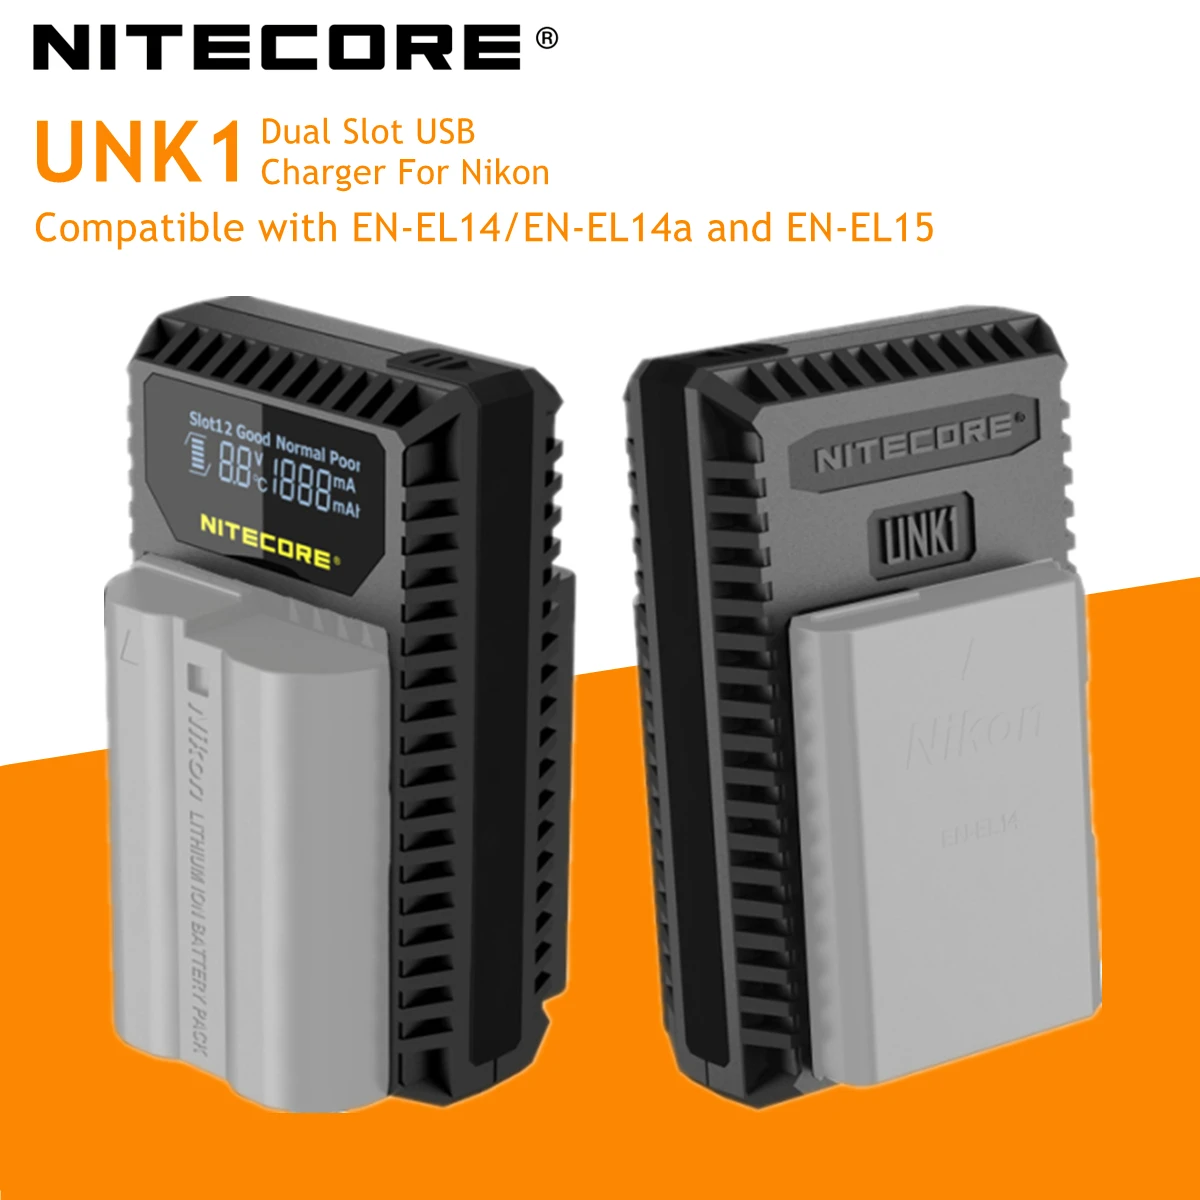 Nitecore-cargador USB de doble ranura UNK1 para cámara Nikon, D750, D810, D610, DF, D7100, D7000, D5100, D600, batería EN-EL14, EN-EL14a, EN-EL15